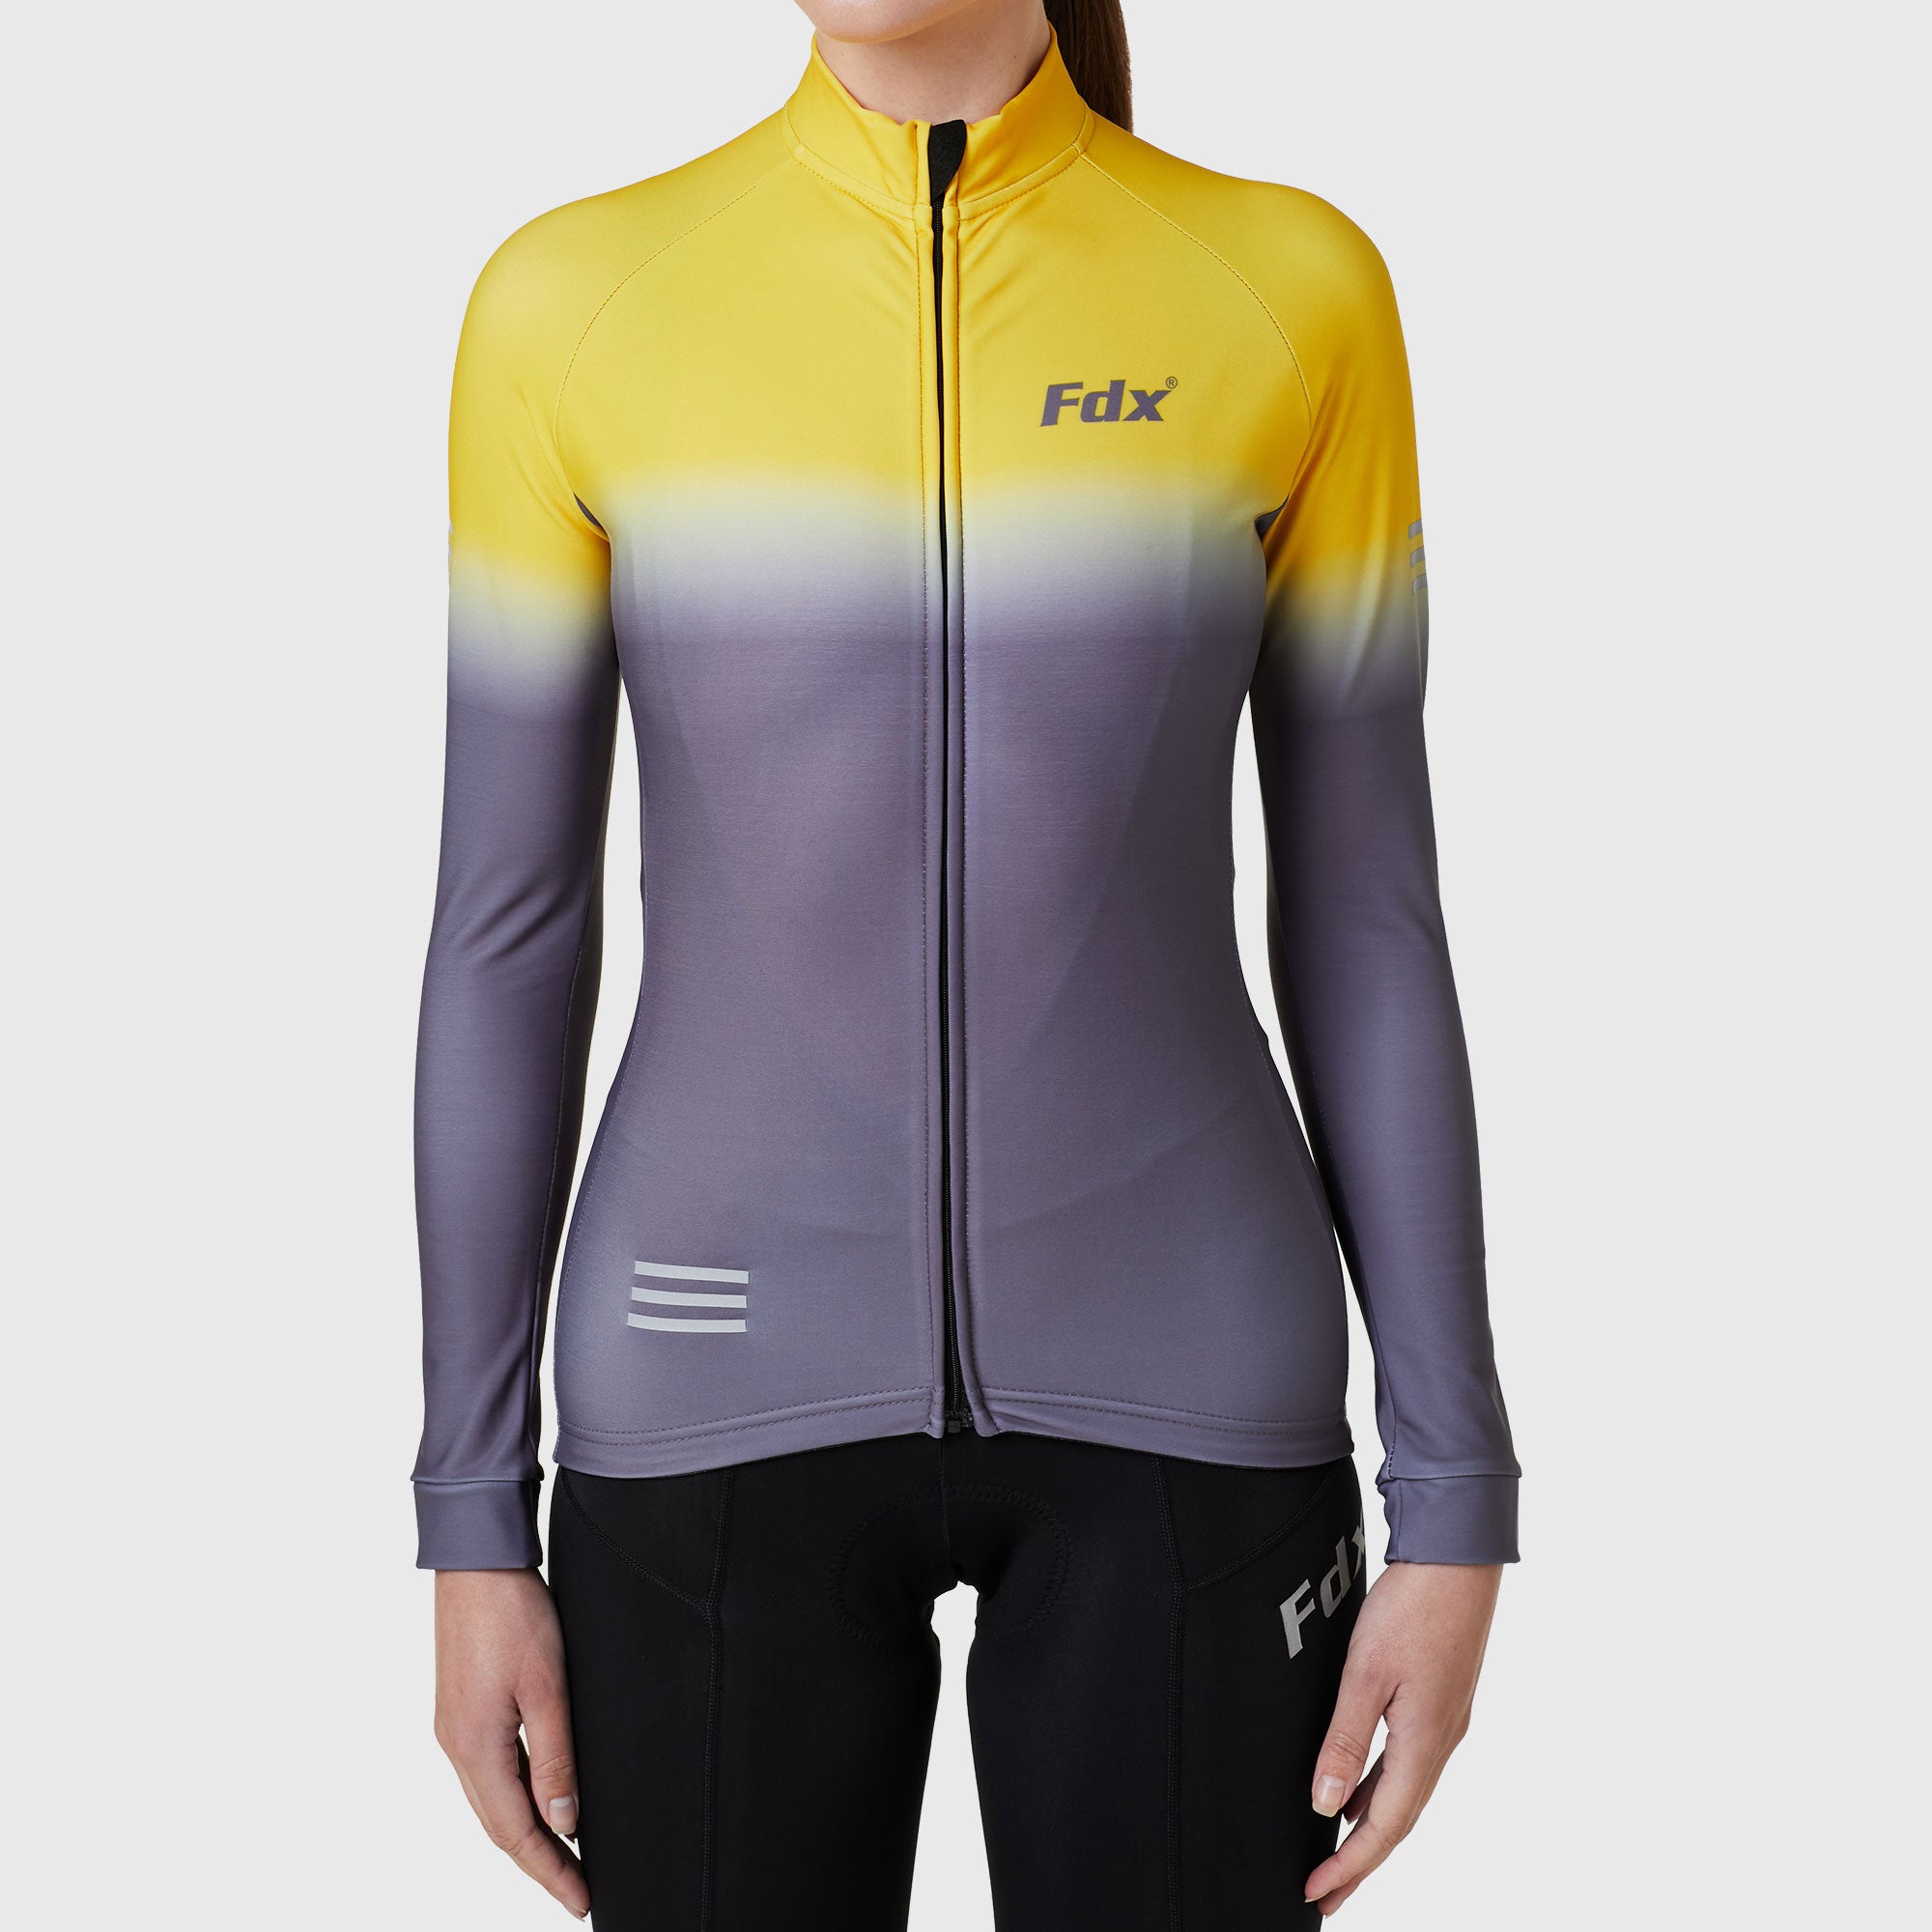 Fdx Duo Women's Yellow / Grey Long Sleeve Winter Cycling Jersey